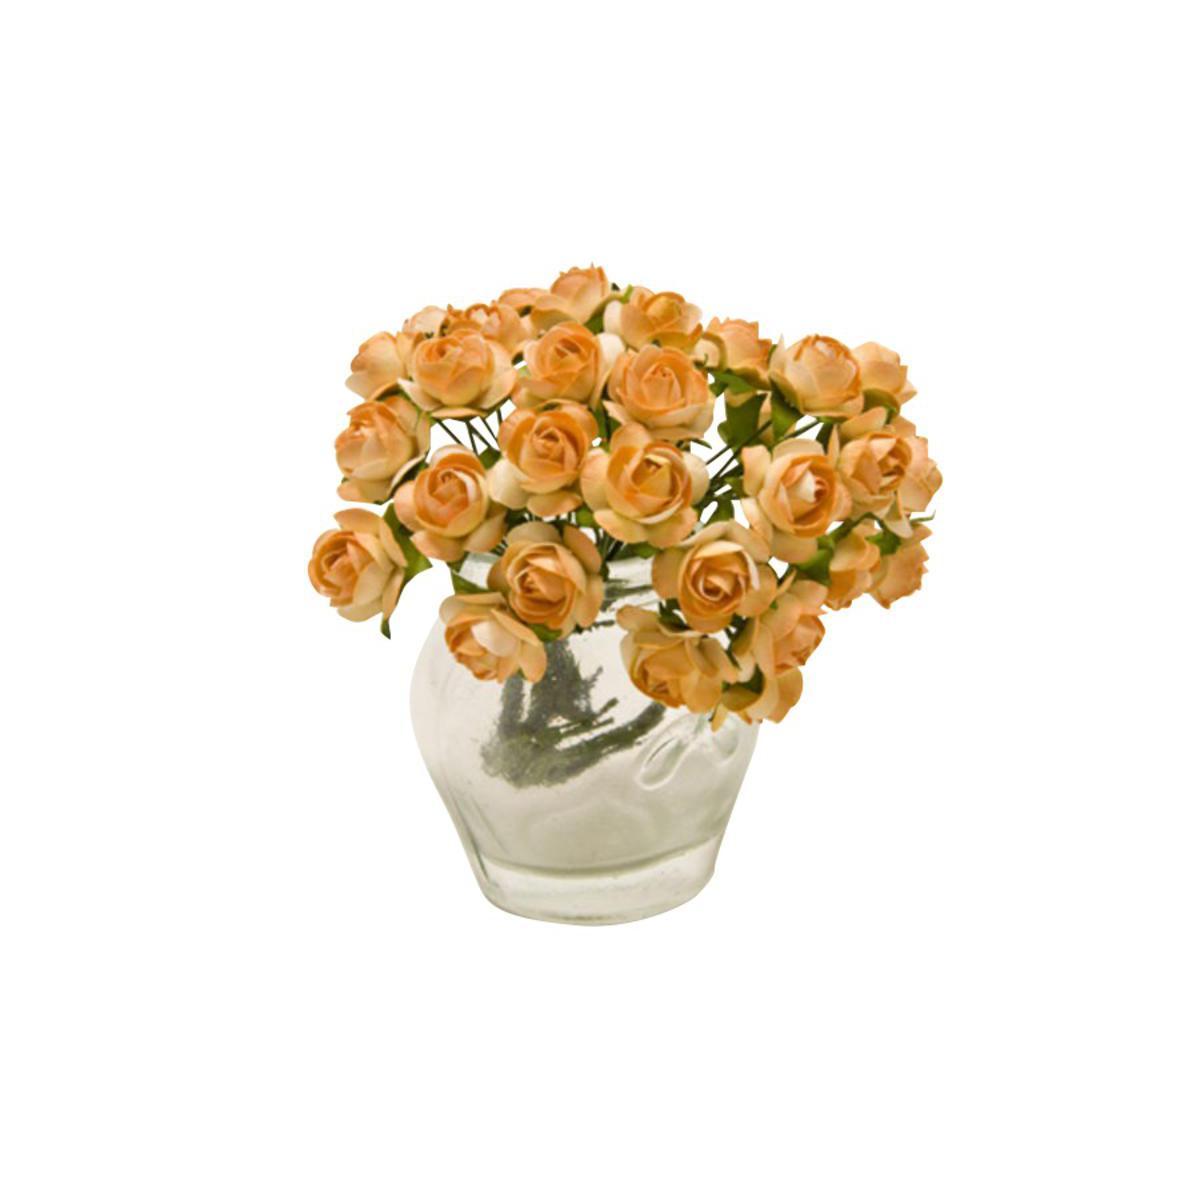 Lot de 36 mini fleurs en papier - Diamètre 1,5 cm - Orange